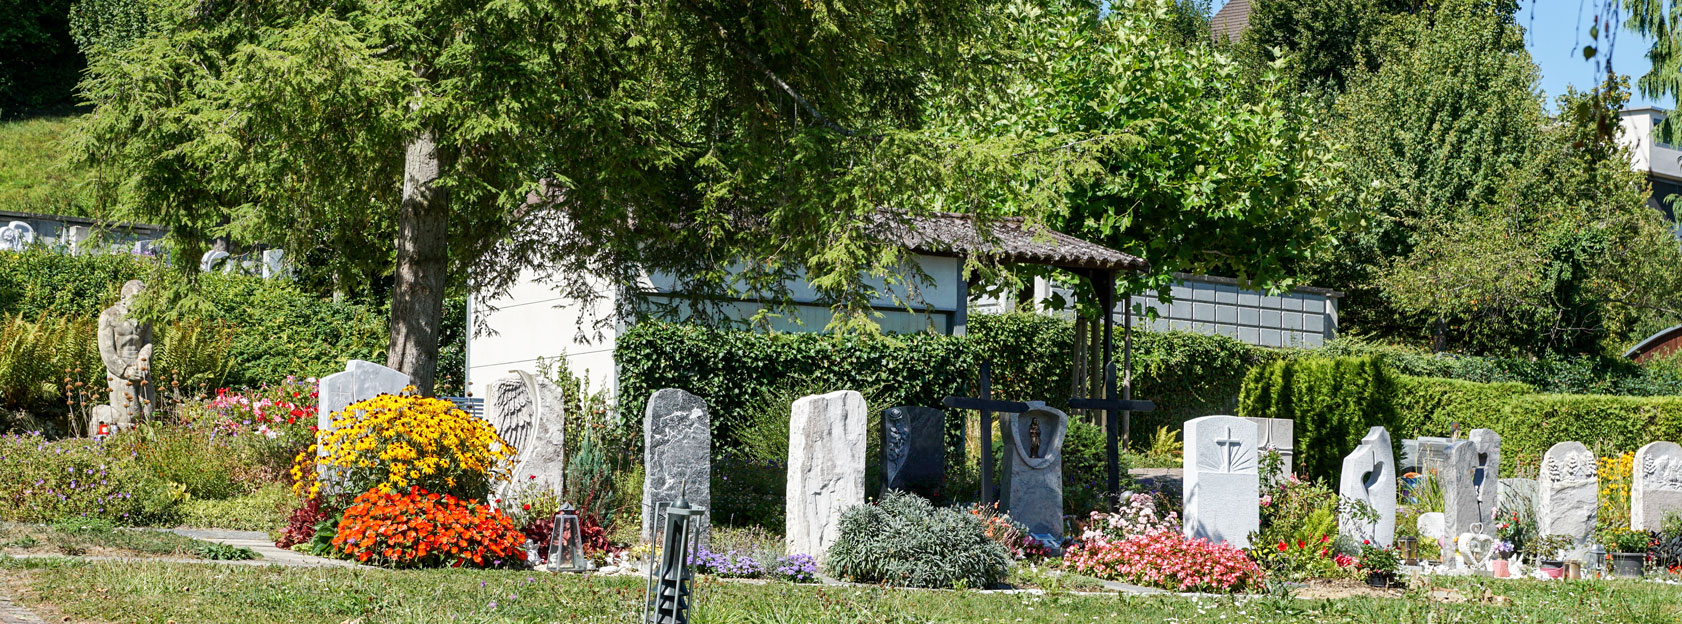 Friedhof und Grabpflege von Kunz Gartenbau Seon